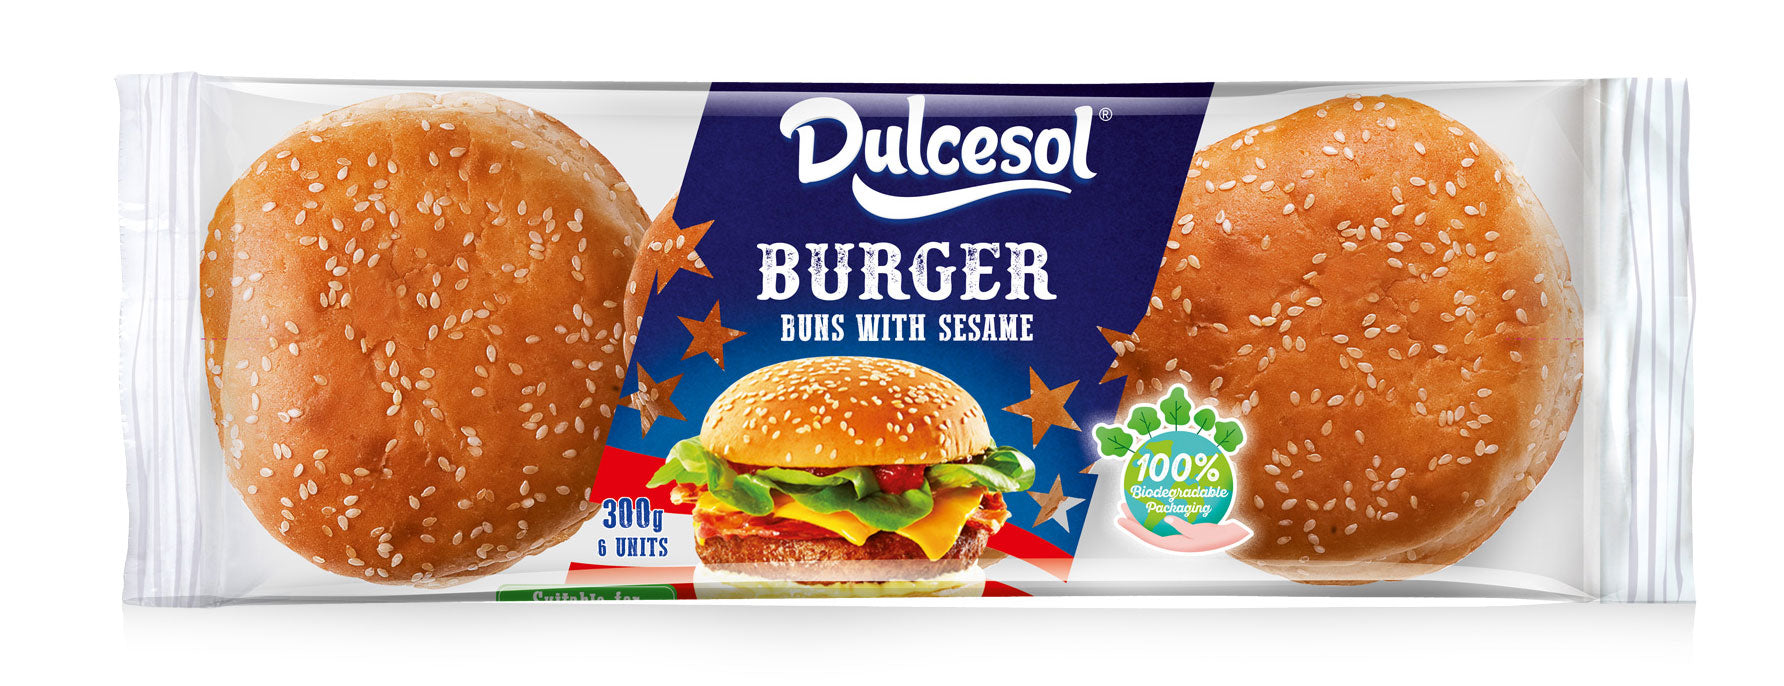 8-x-Dulcesol-Burger-Buns-Sesame-Seeds-6-Pack-300Gm